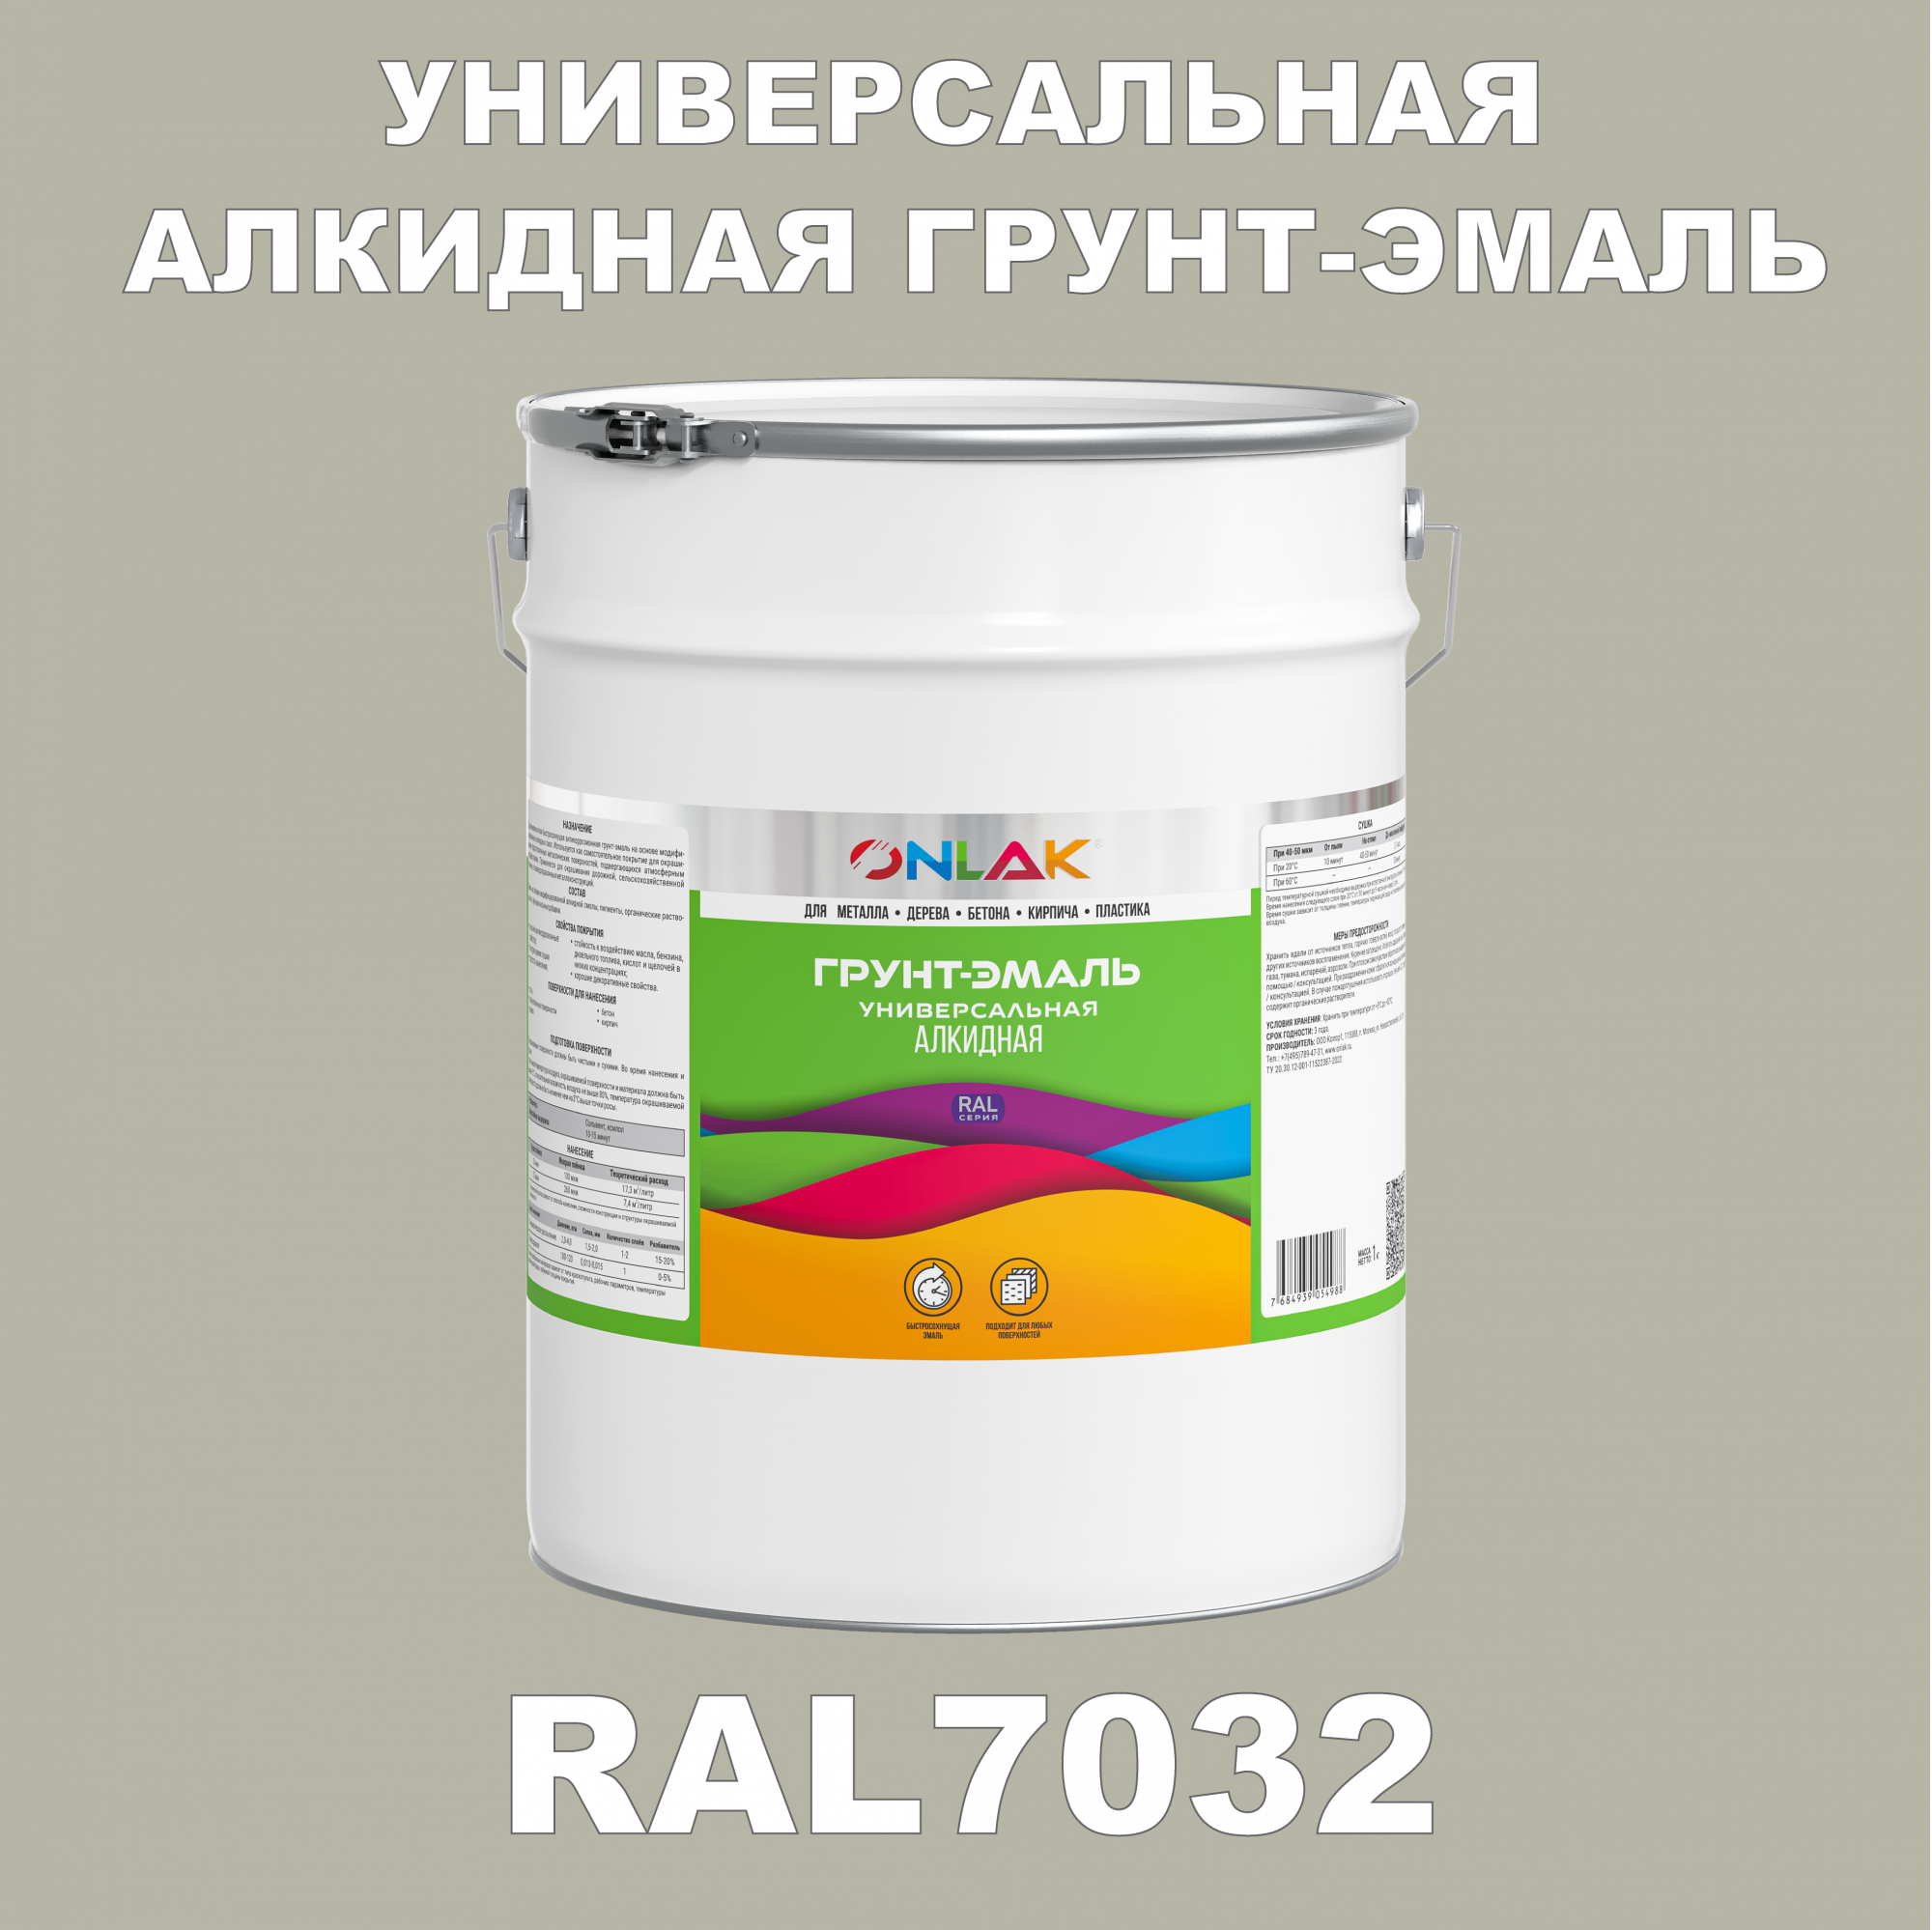 Грунт-эмаль ONLAK 1К RAL7032 антикоррозионная алкидная по металлу по ржавчине 20 кг грунт эмаль yollo по ржавчине алкидная синяя 0 9 кг